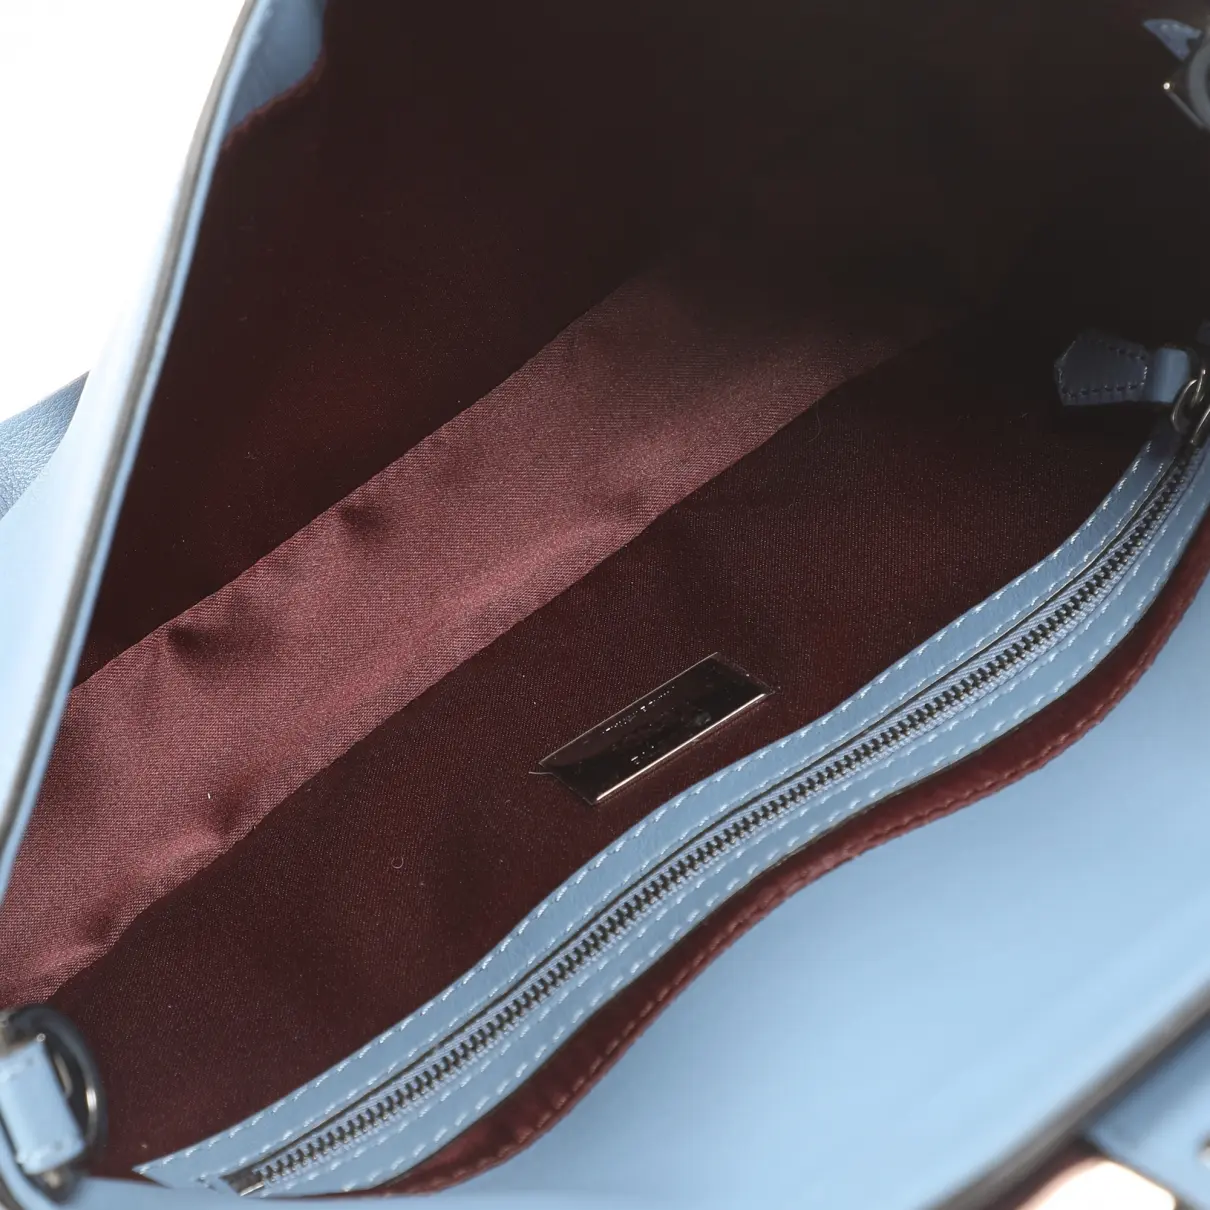 Buy Fendi Baguette leather bag online